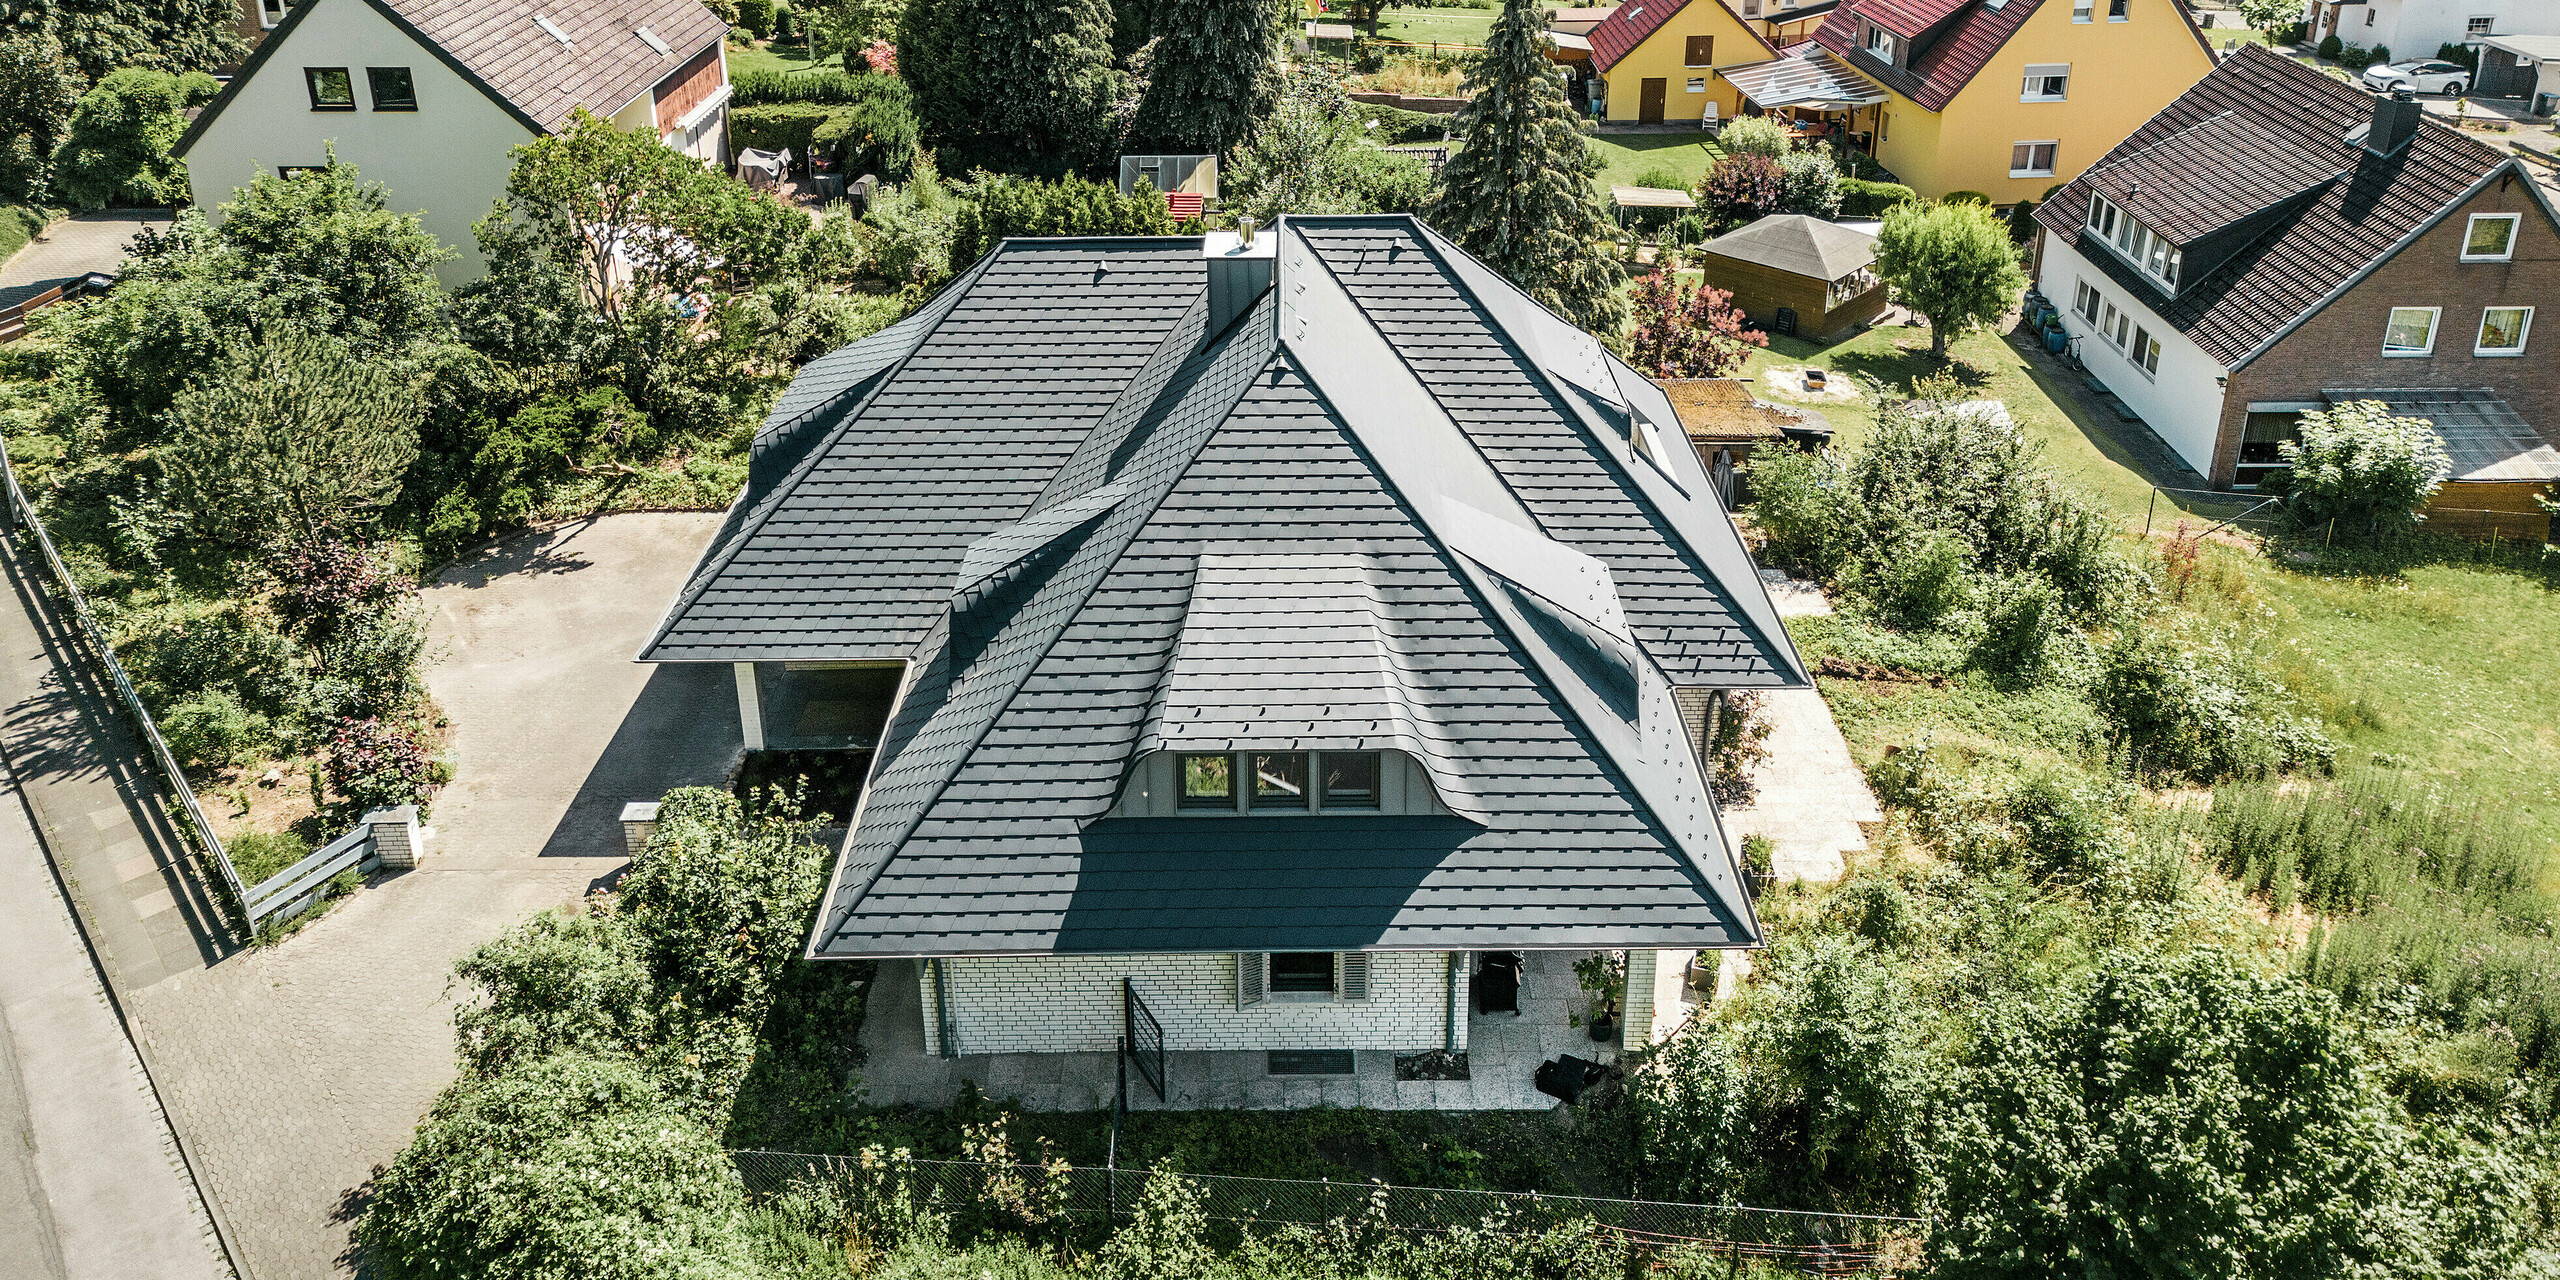 Vogelperspektive auf Dach von Einfamilienhaus mit PREFA Dachschindeln in P.10 Anthrazit